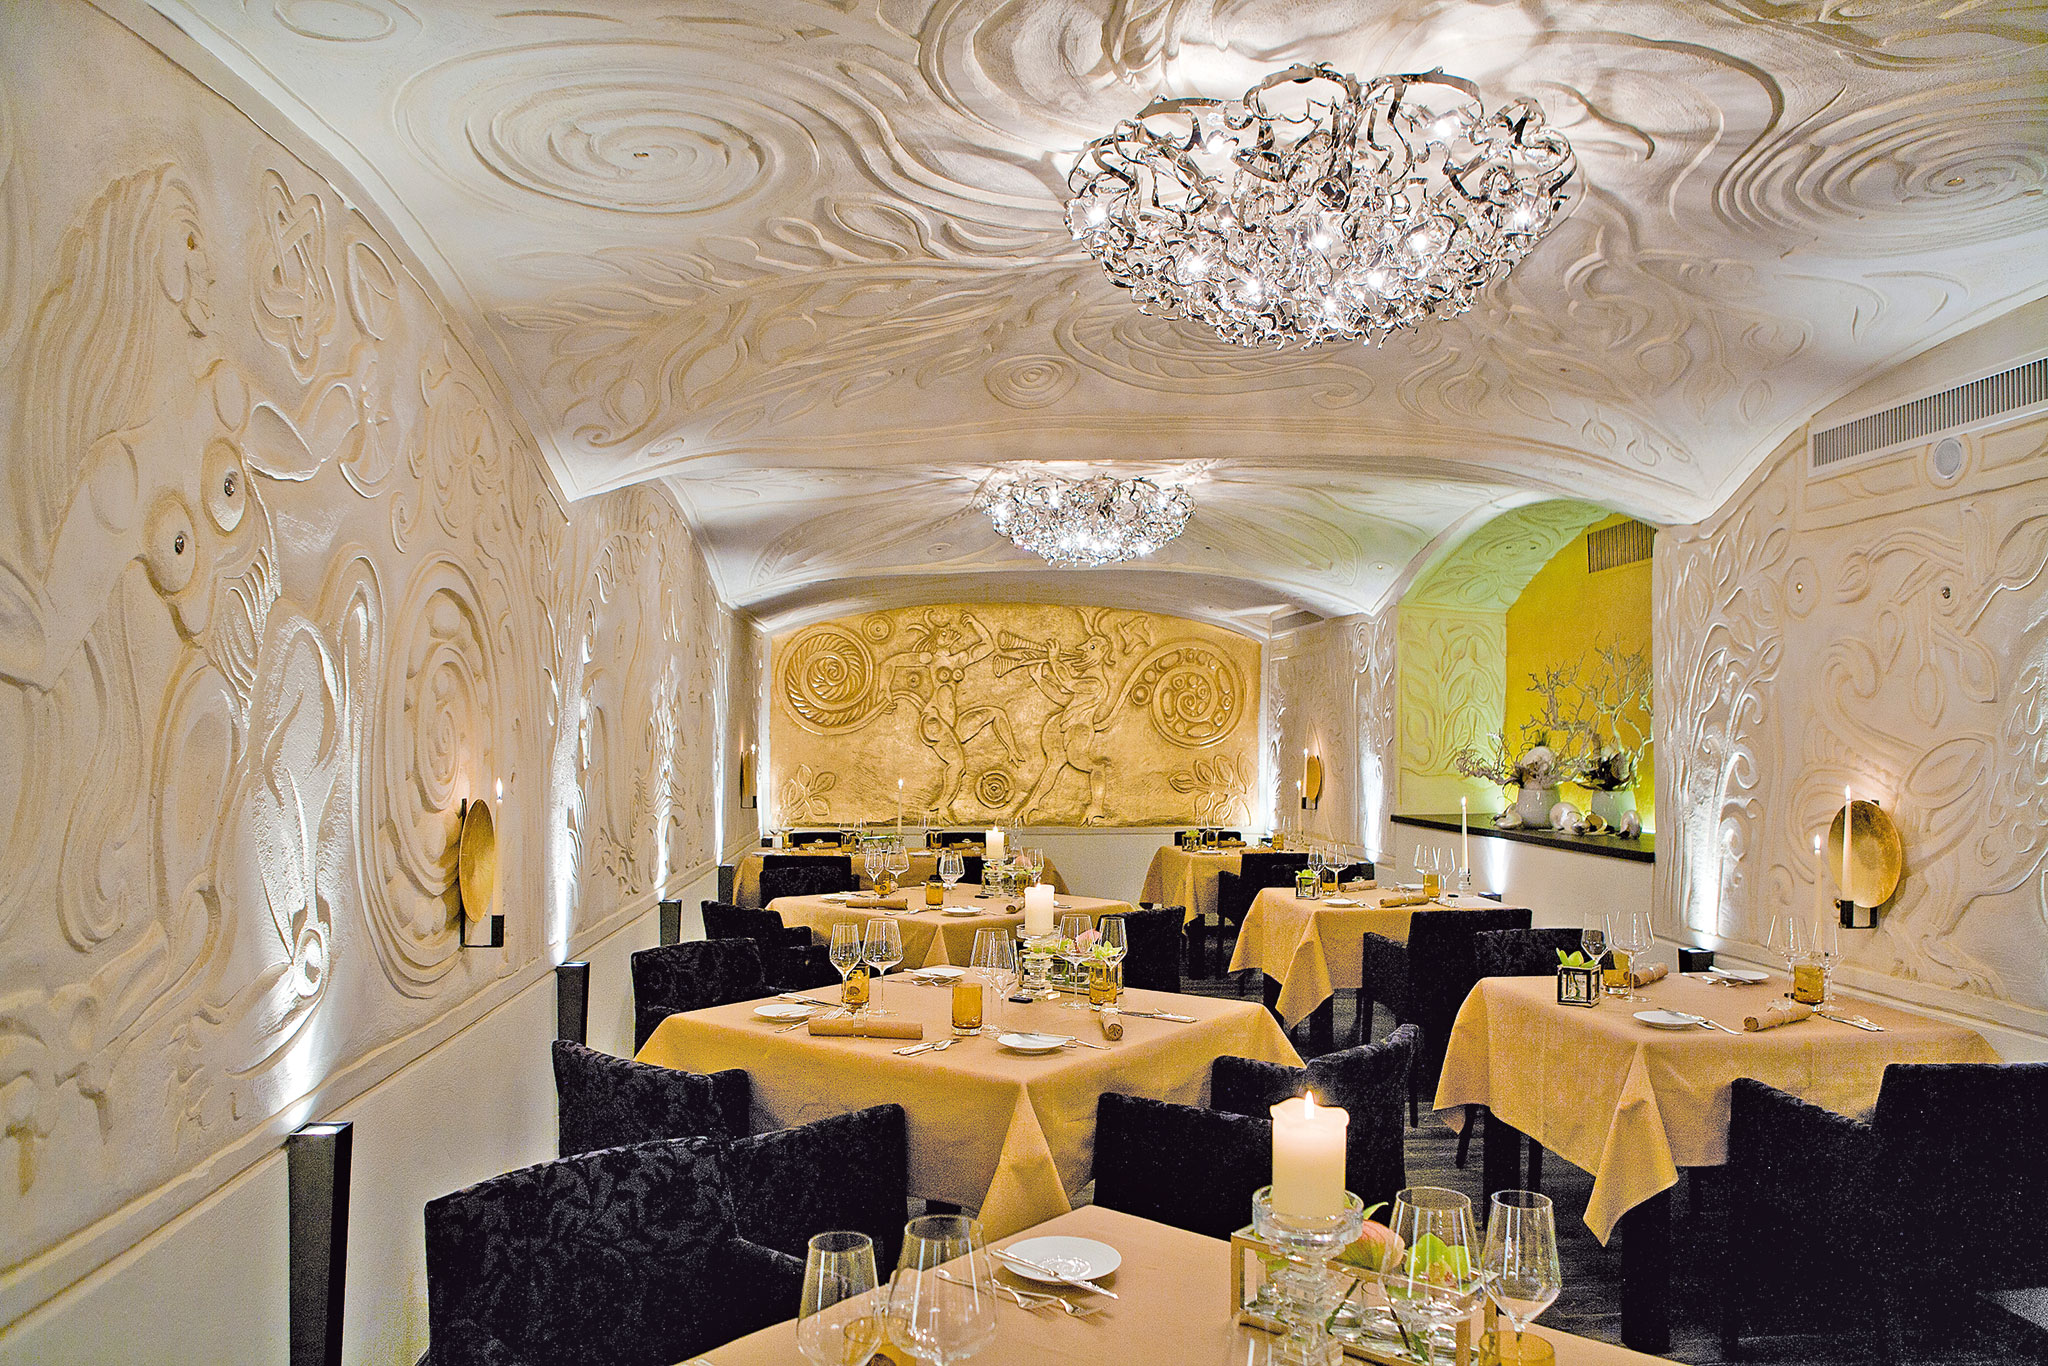 Rolf Fliegauf wurde berühmt als jüngster Zwei-Sterne-Koch Europas. Heute begeistert er seine Gäste in seinem Restaurant »Ecco« in St. Moritz, das auch im tessinischen Ascona zu finden ist.